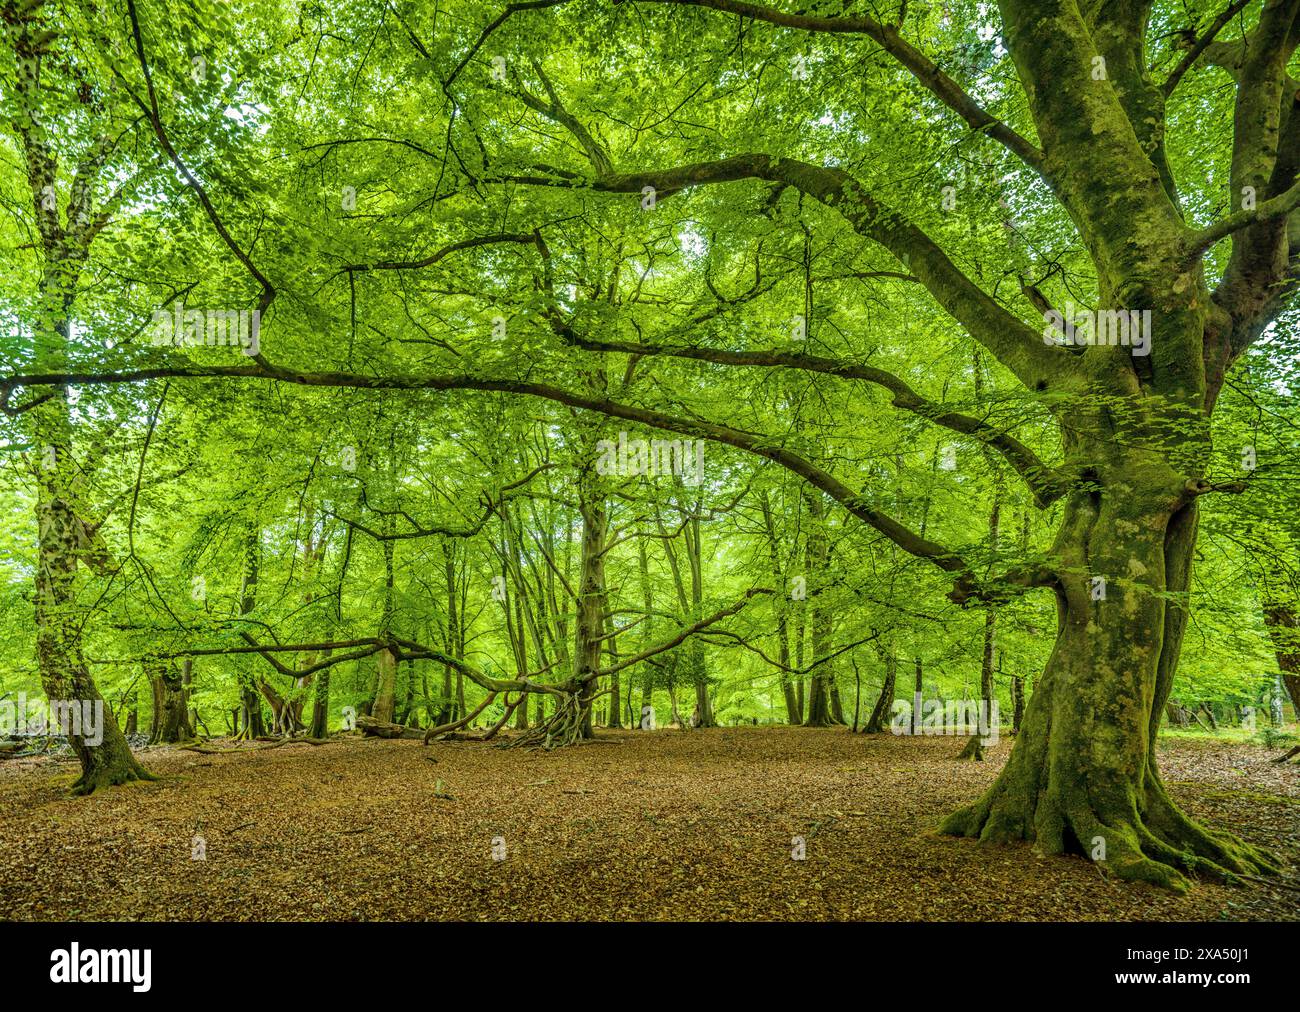 Grüner Wald mit Sonnenlicht, das durch die Baumkronen filtert und die weitläufigen Äste und saftig grünen Blätter hervorhebt. Stockfoto